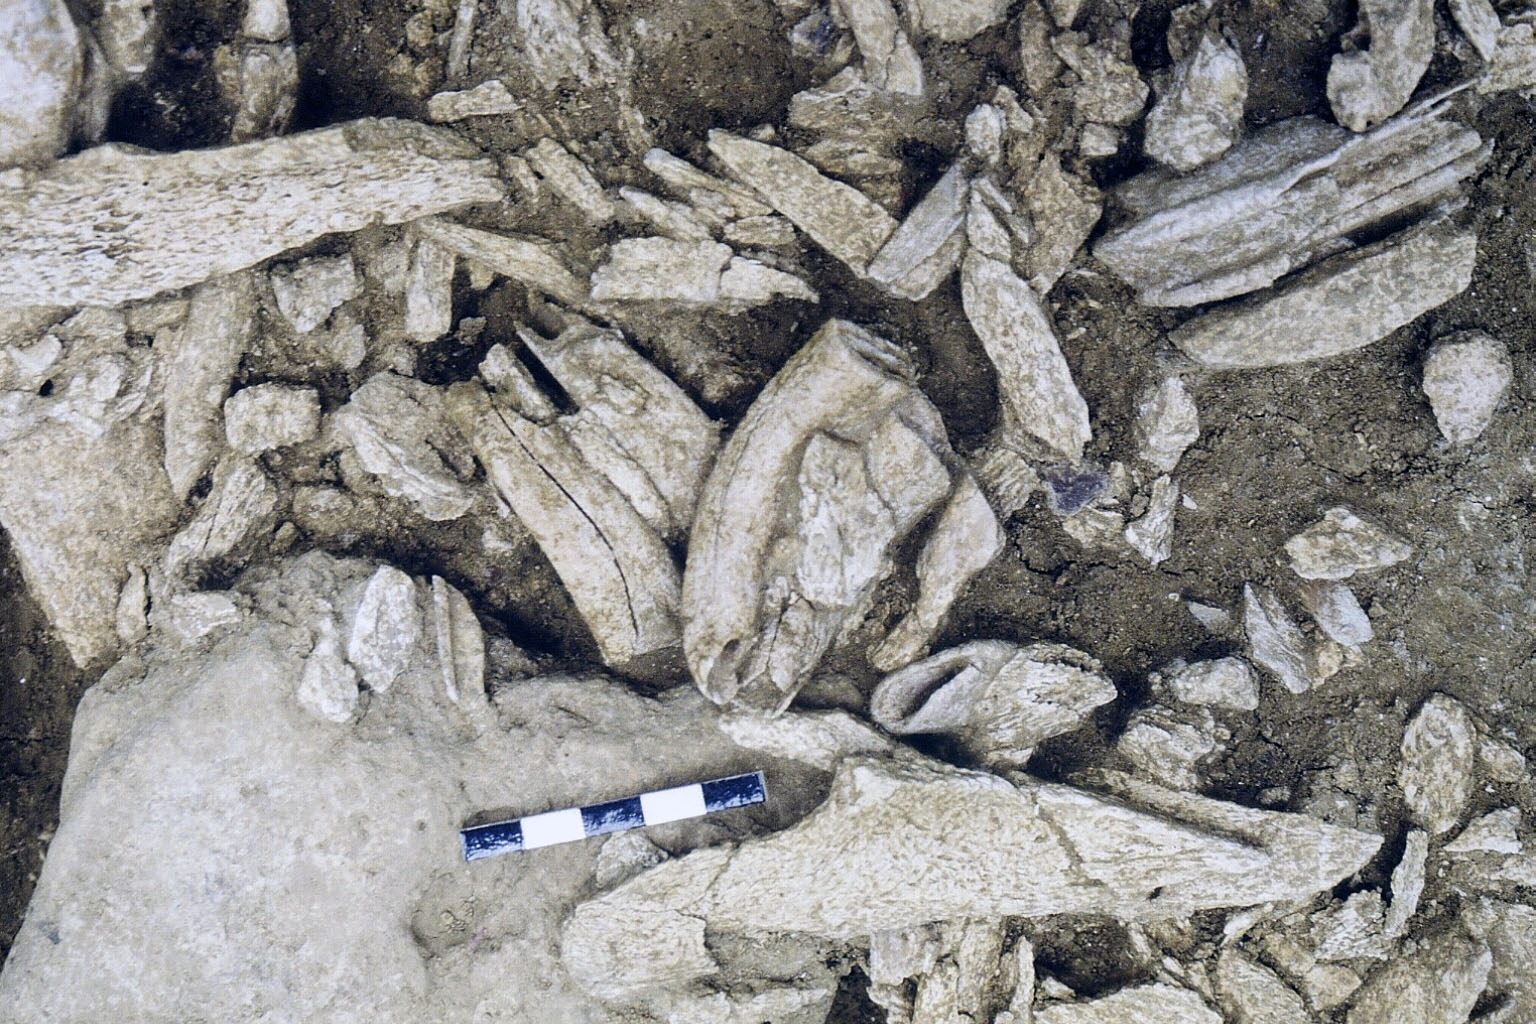 Vue de détail de l'amas de restes de chevaux